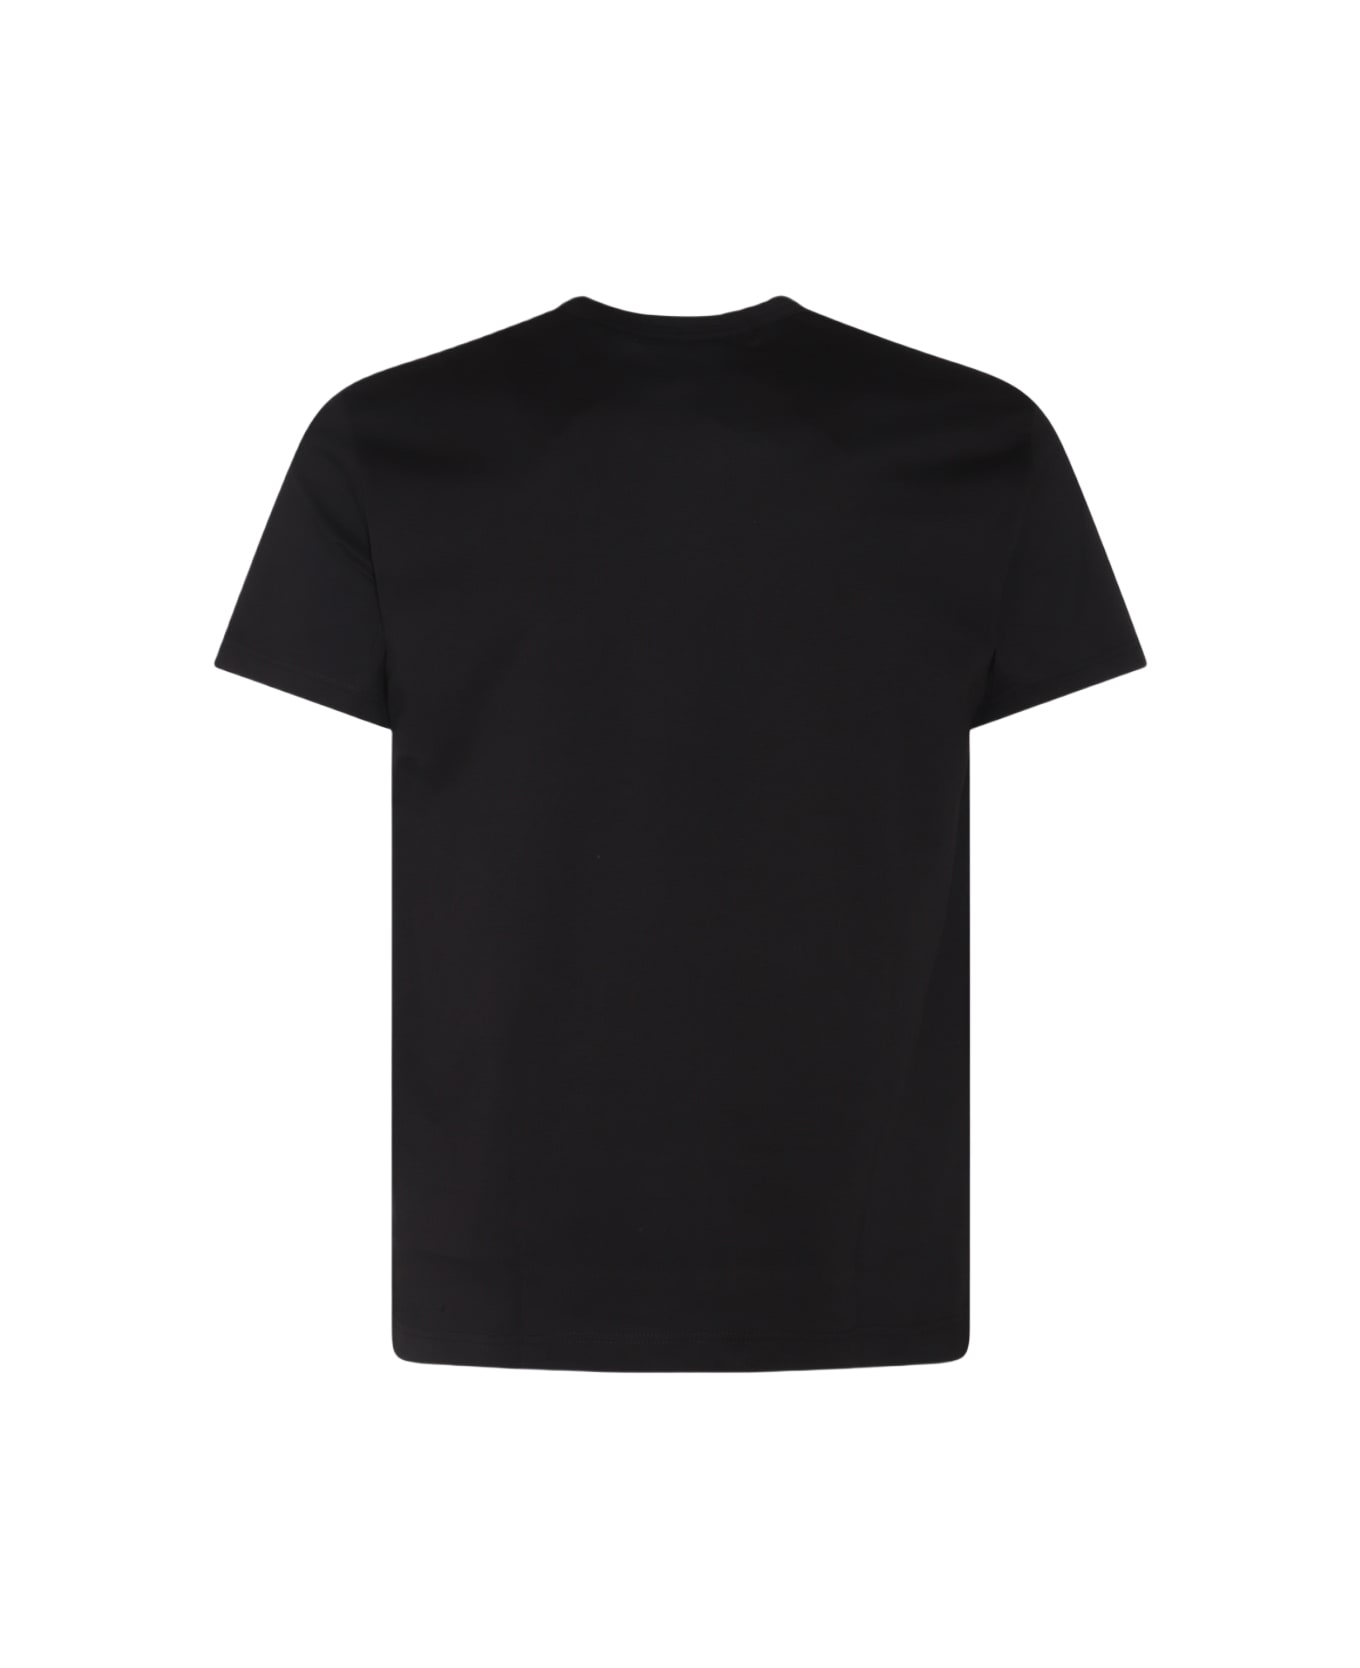 Comme des Garçons Black Cotton T-shirt - Black シャツ